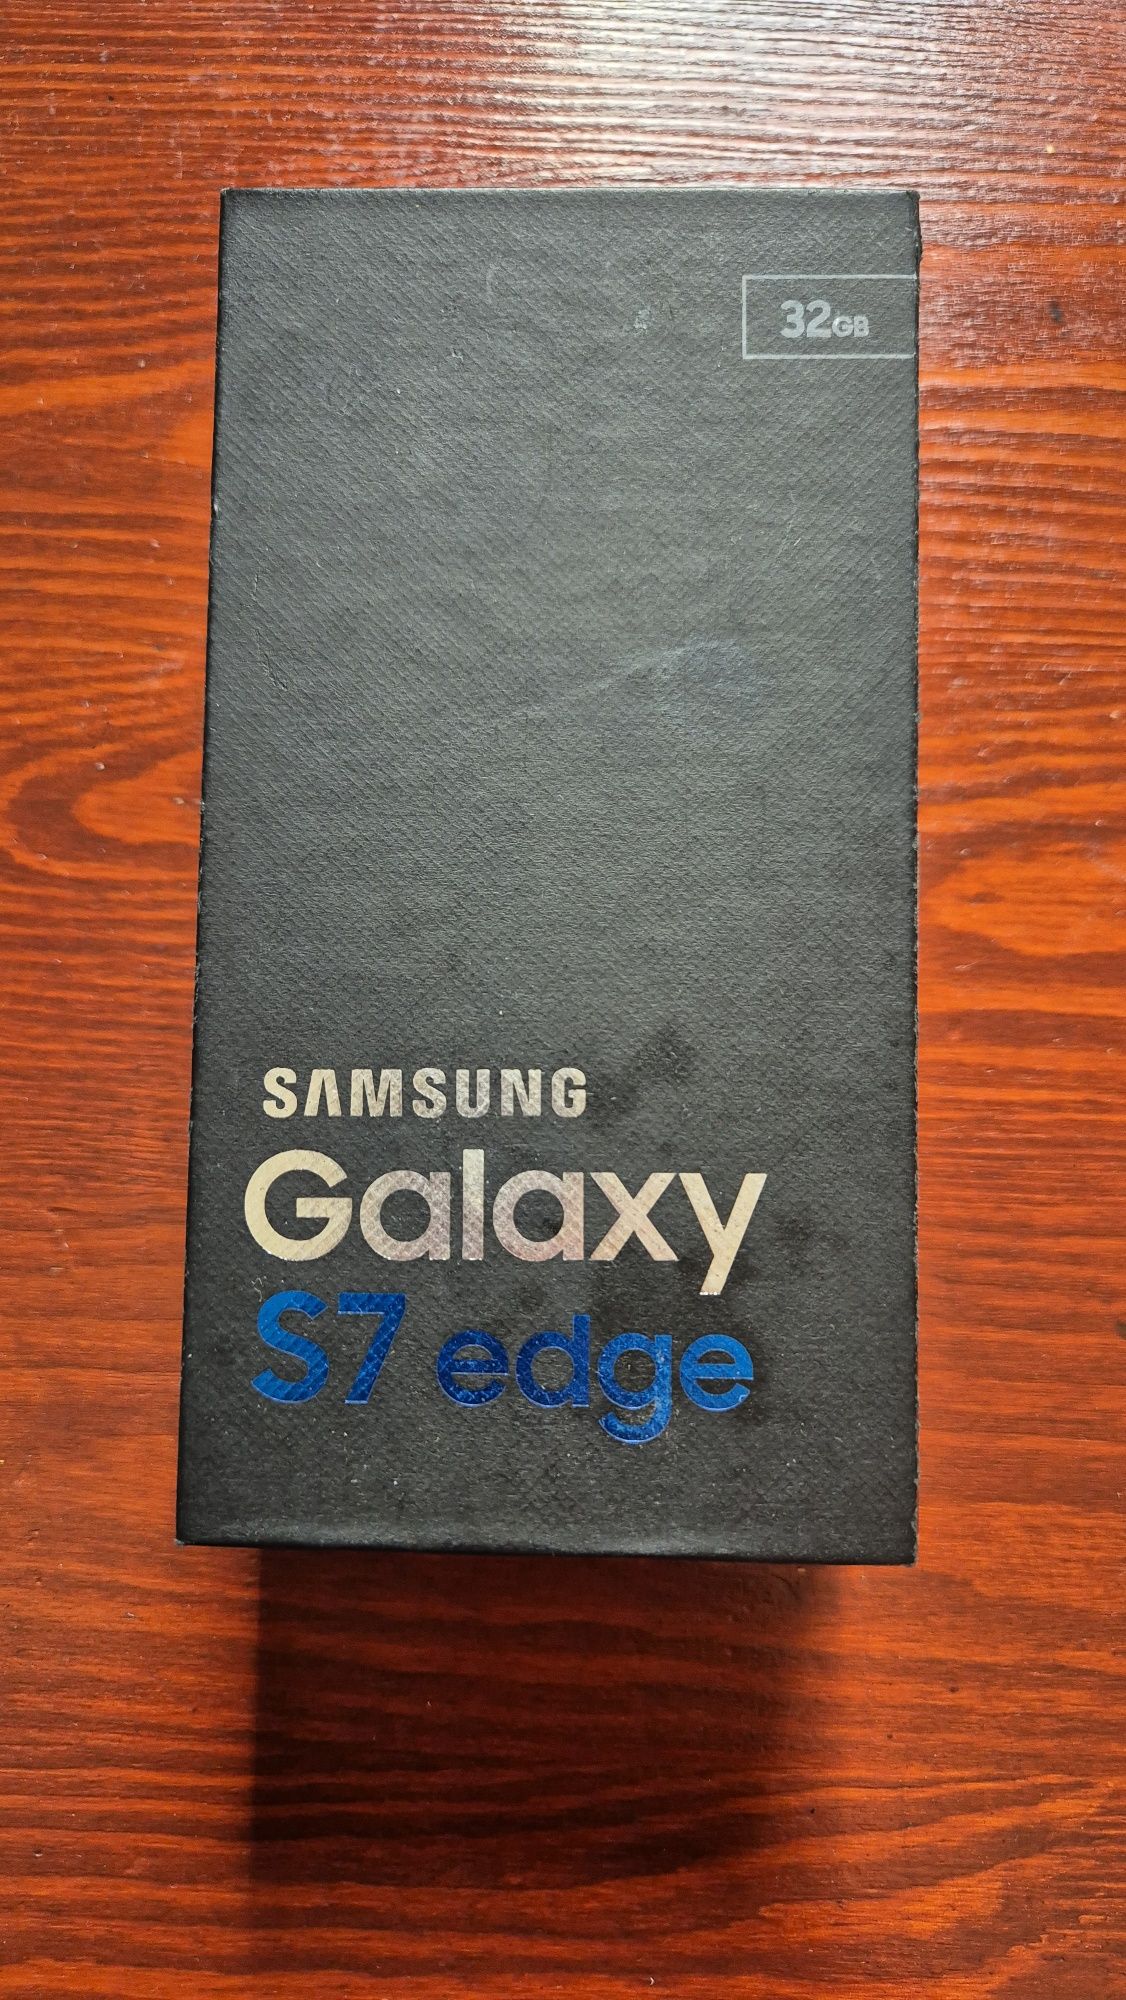 Samsung galaxy S7 EDGE 32GB